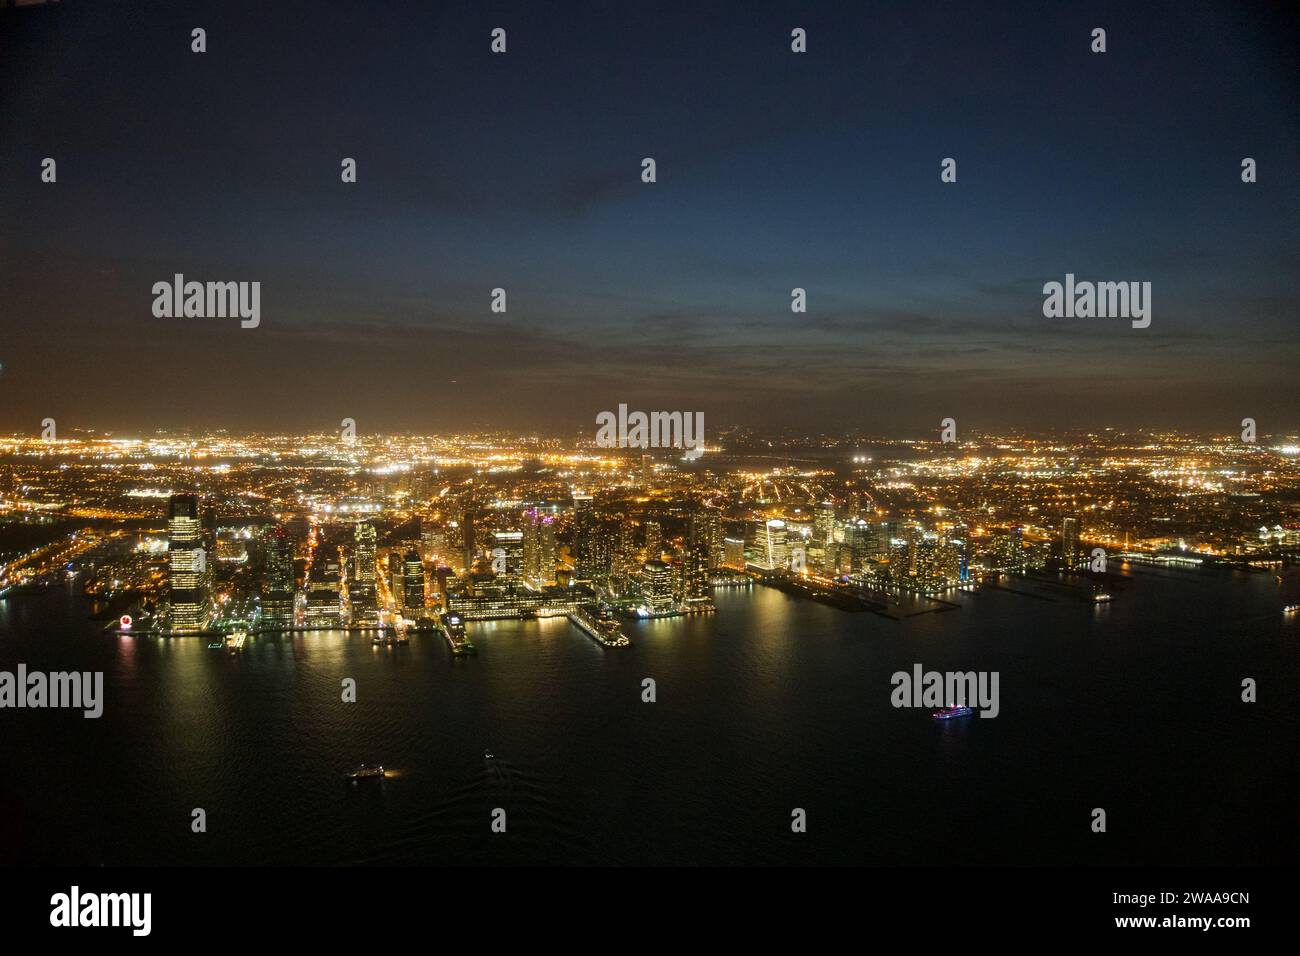 Ein Blick aus der Vogelperspektive fängt die pulsierende Energie von New York City bei Nacht mit glitzernden Lichtern und belebten Straßen ein, die das nie schlafende Stadtleben widerspiegeln. Stockfoto